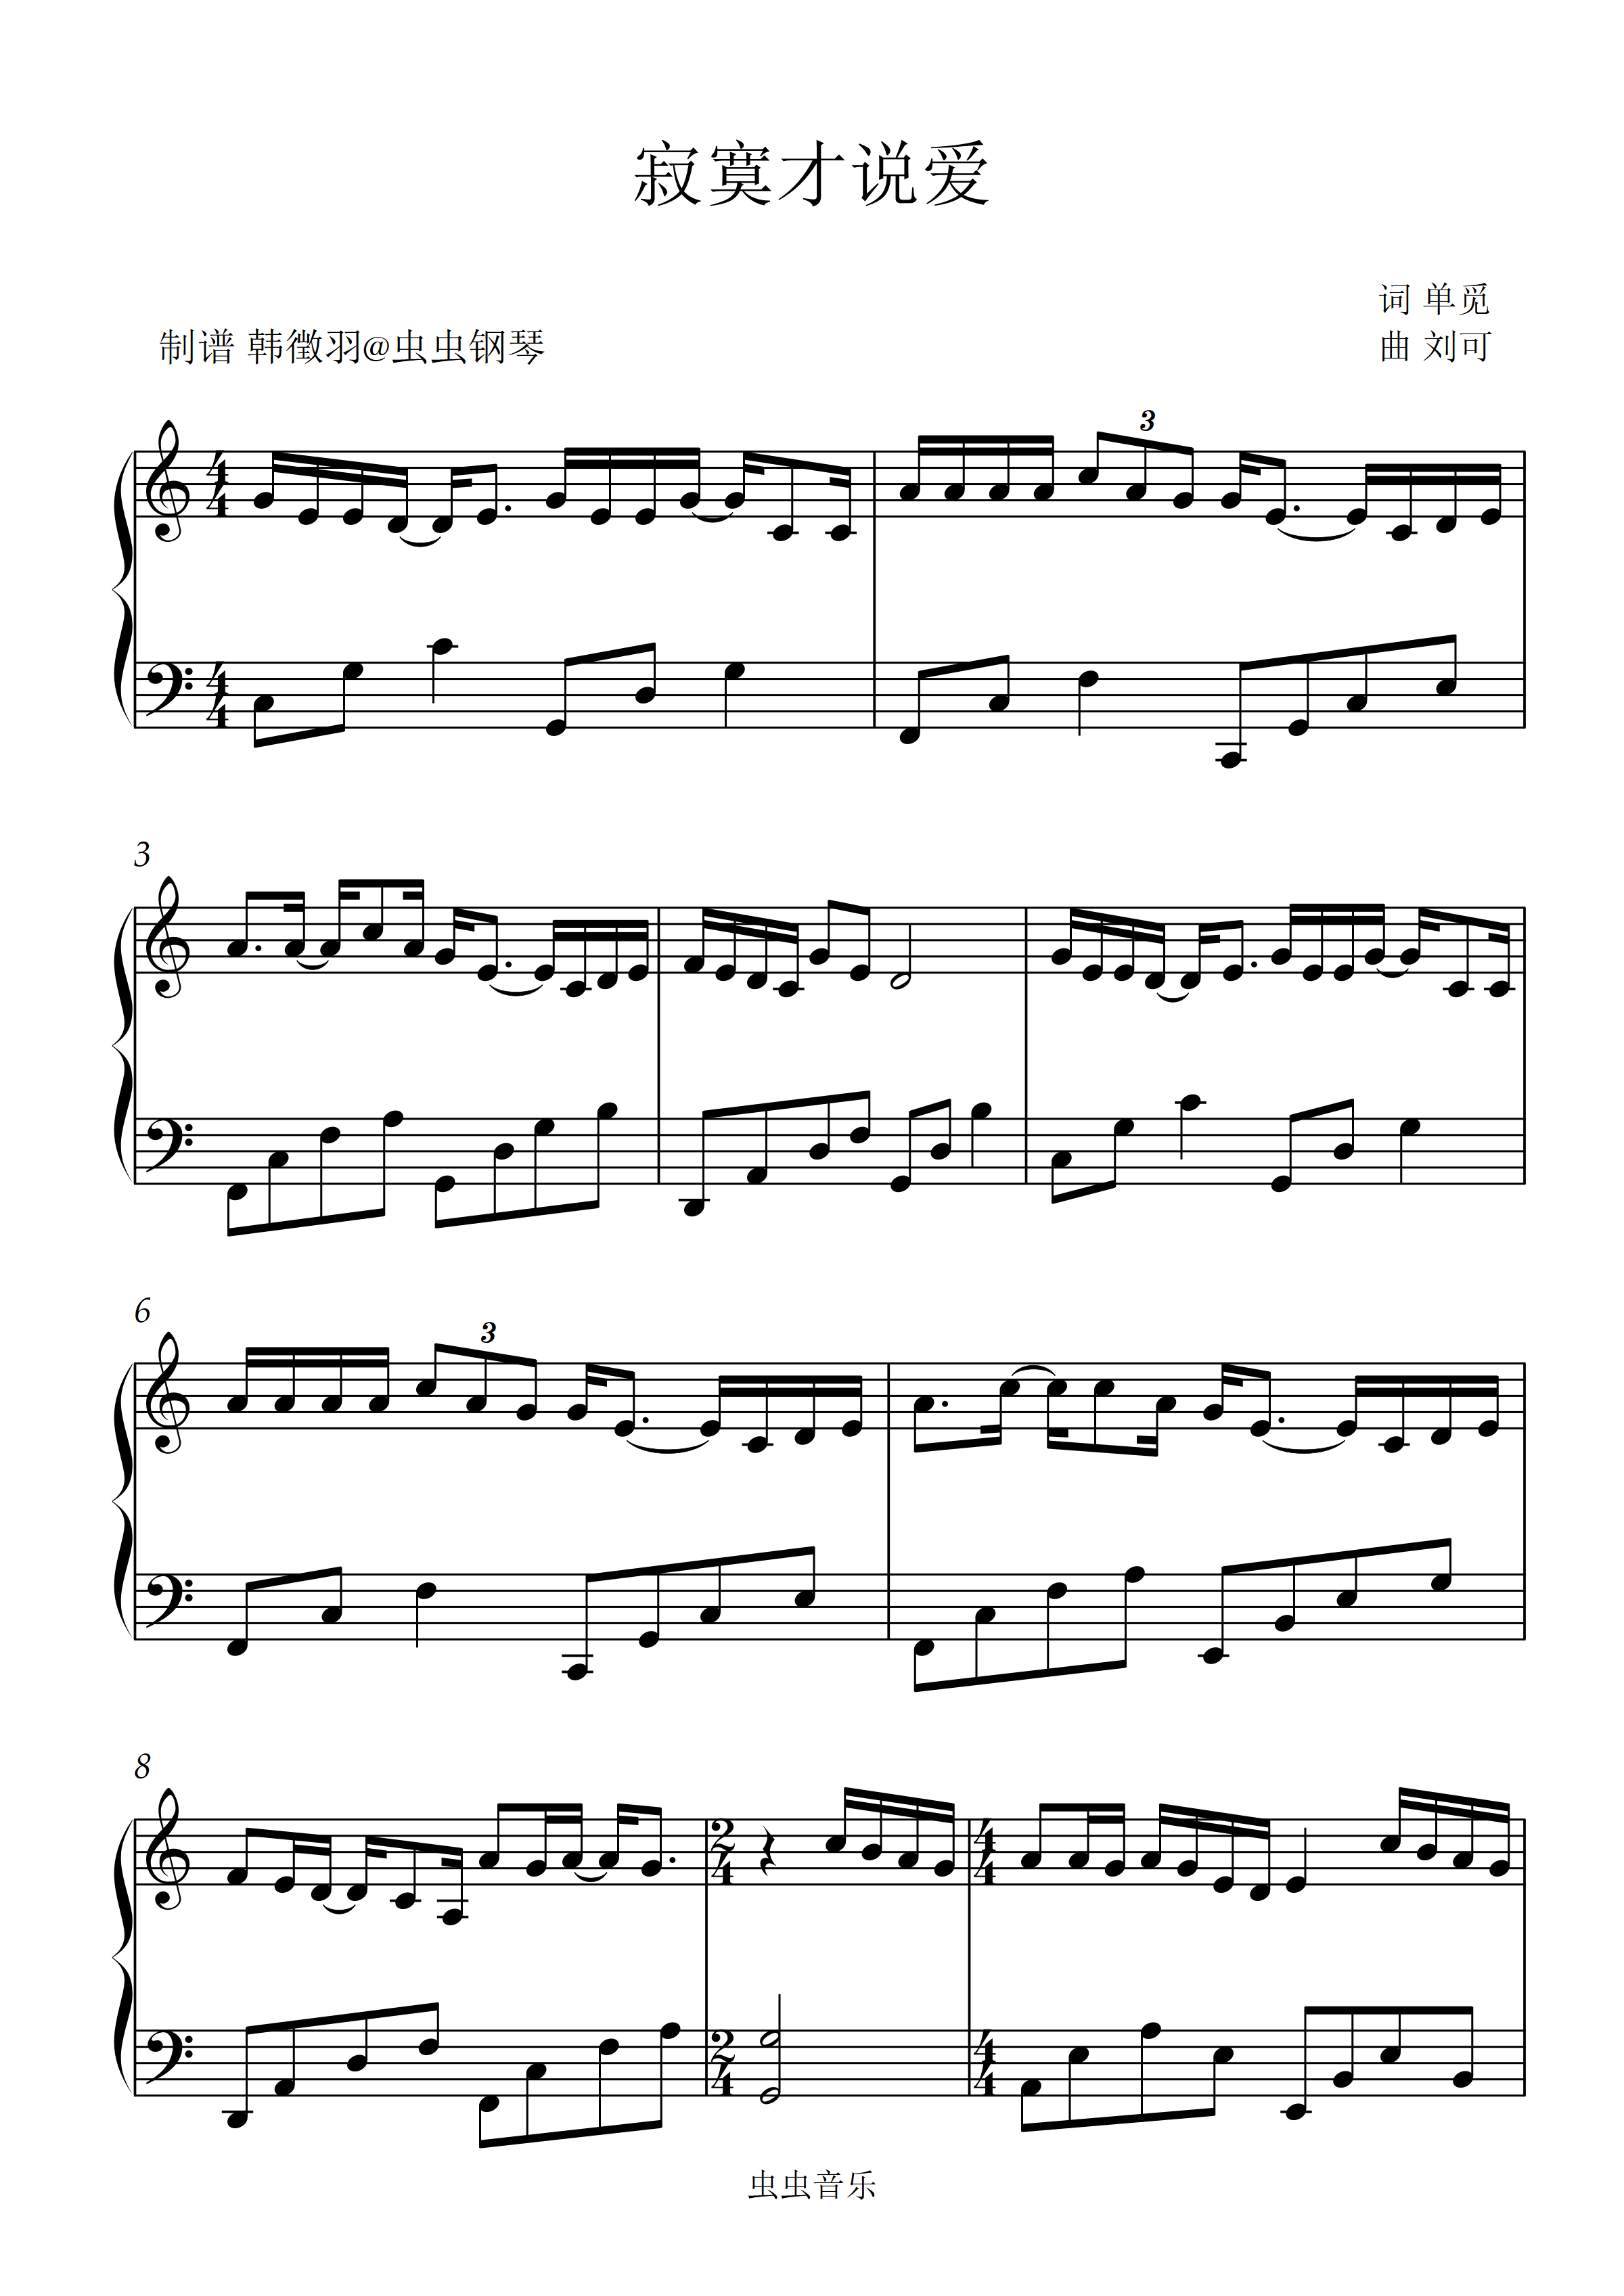 寂寞才说爱-刘可五线谱预览2-钢琴谱文件（五线谱、双手简谱、数字谱、Midi、PDF）免费下载